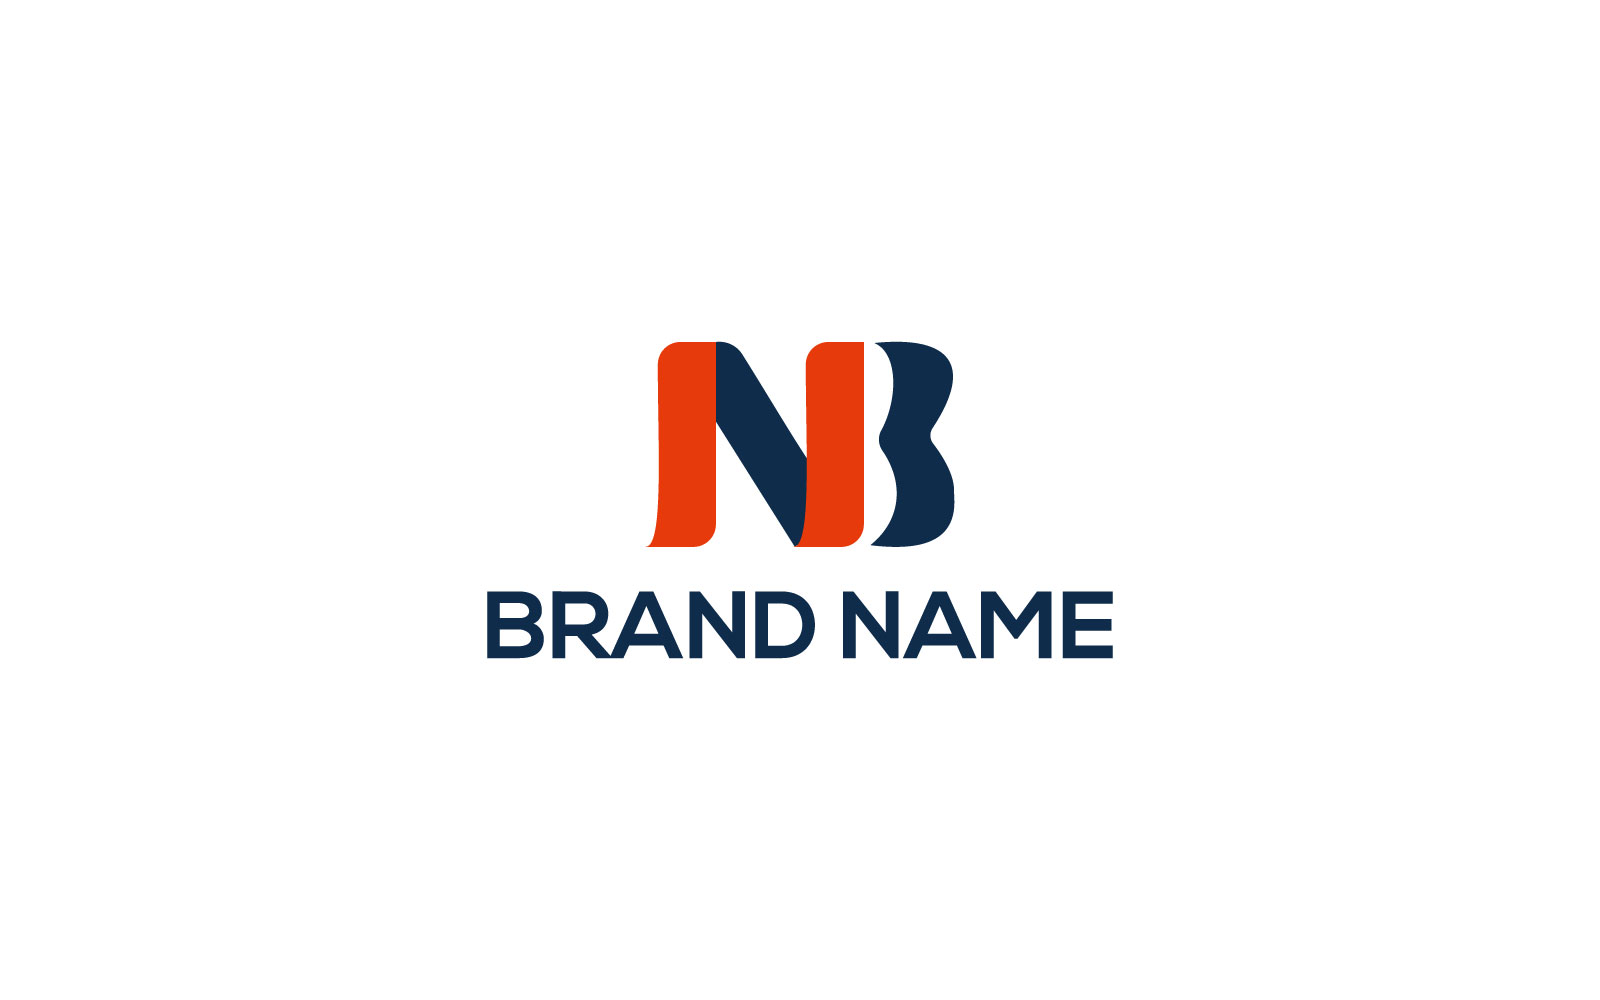 BN letter logo design template